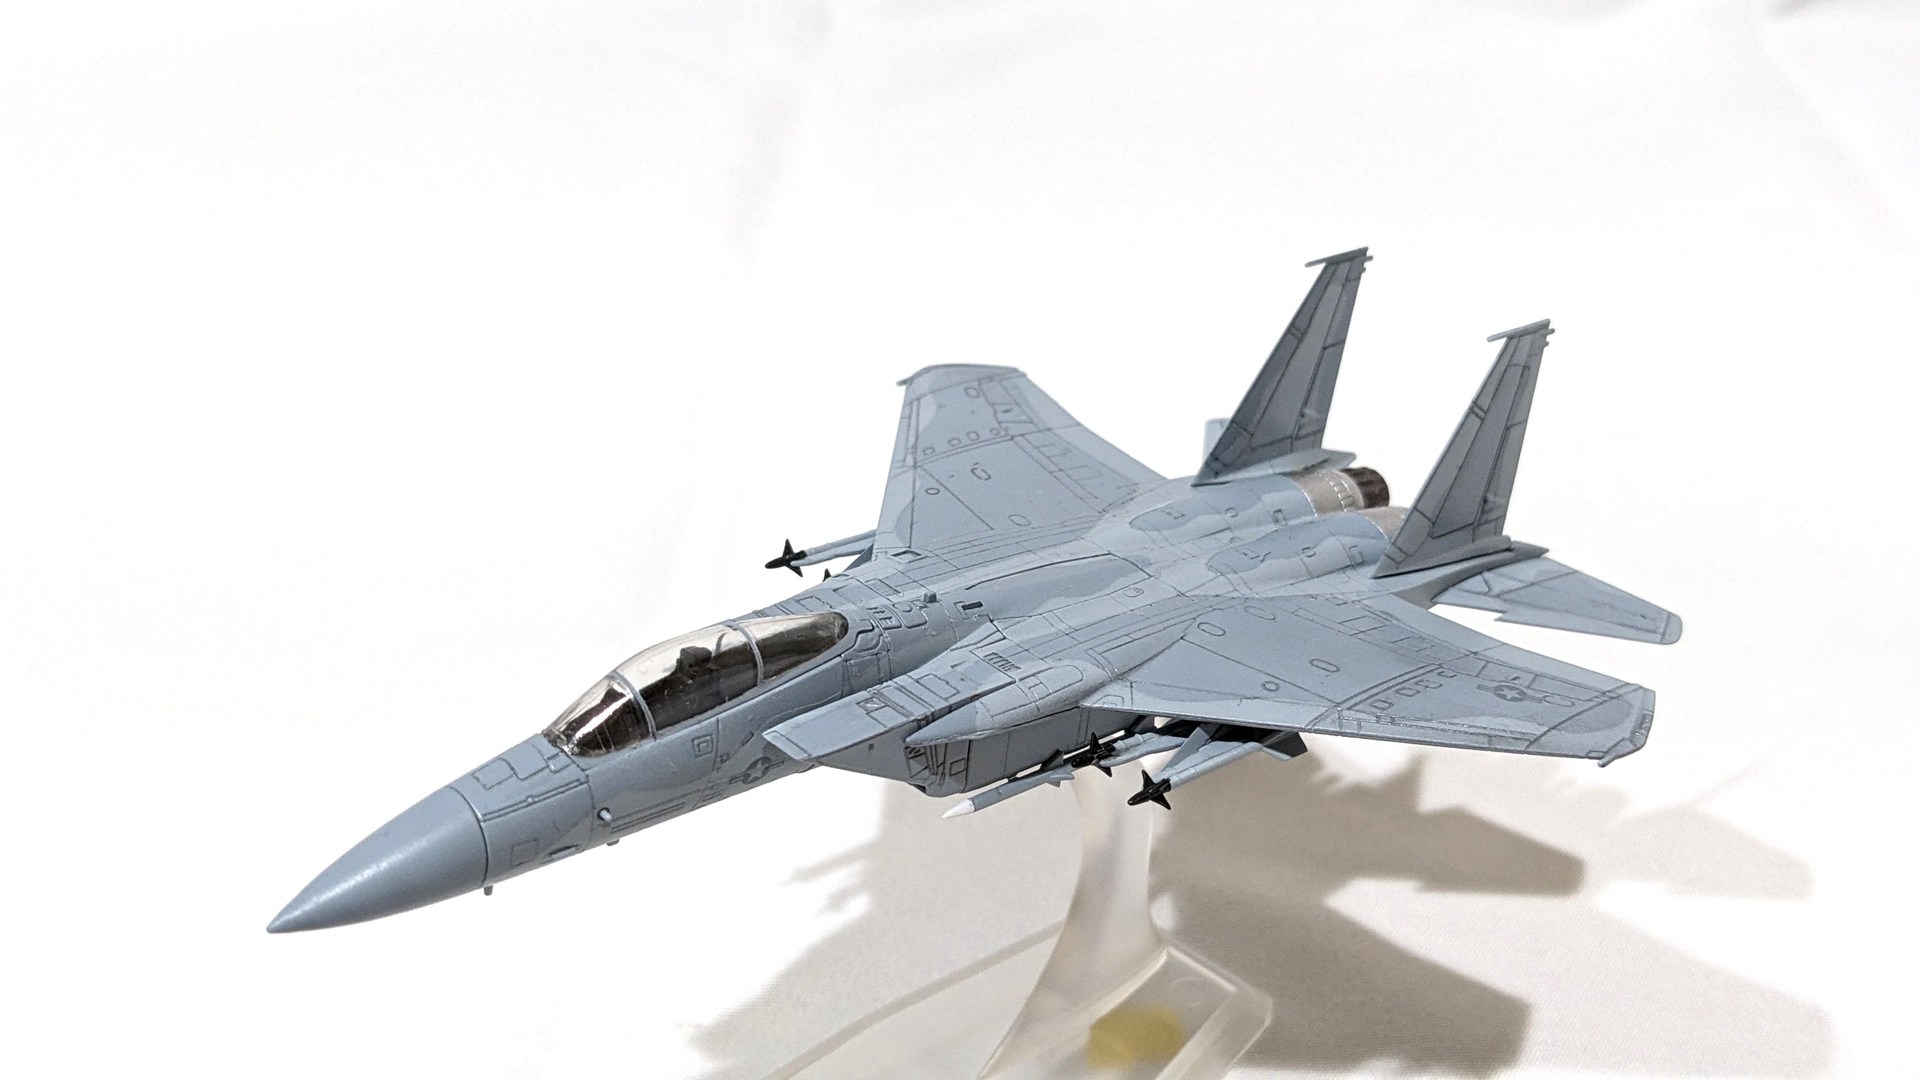 作品分享】1/144 F-15 鷹式戰鬥機@模型技術與資訊哈啦板- 巴哈姆特